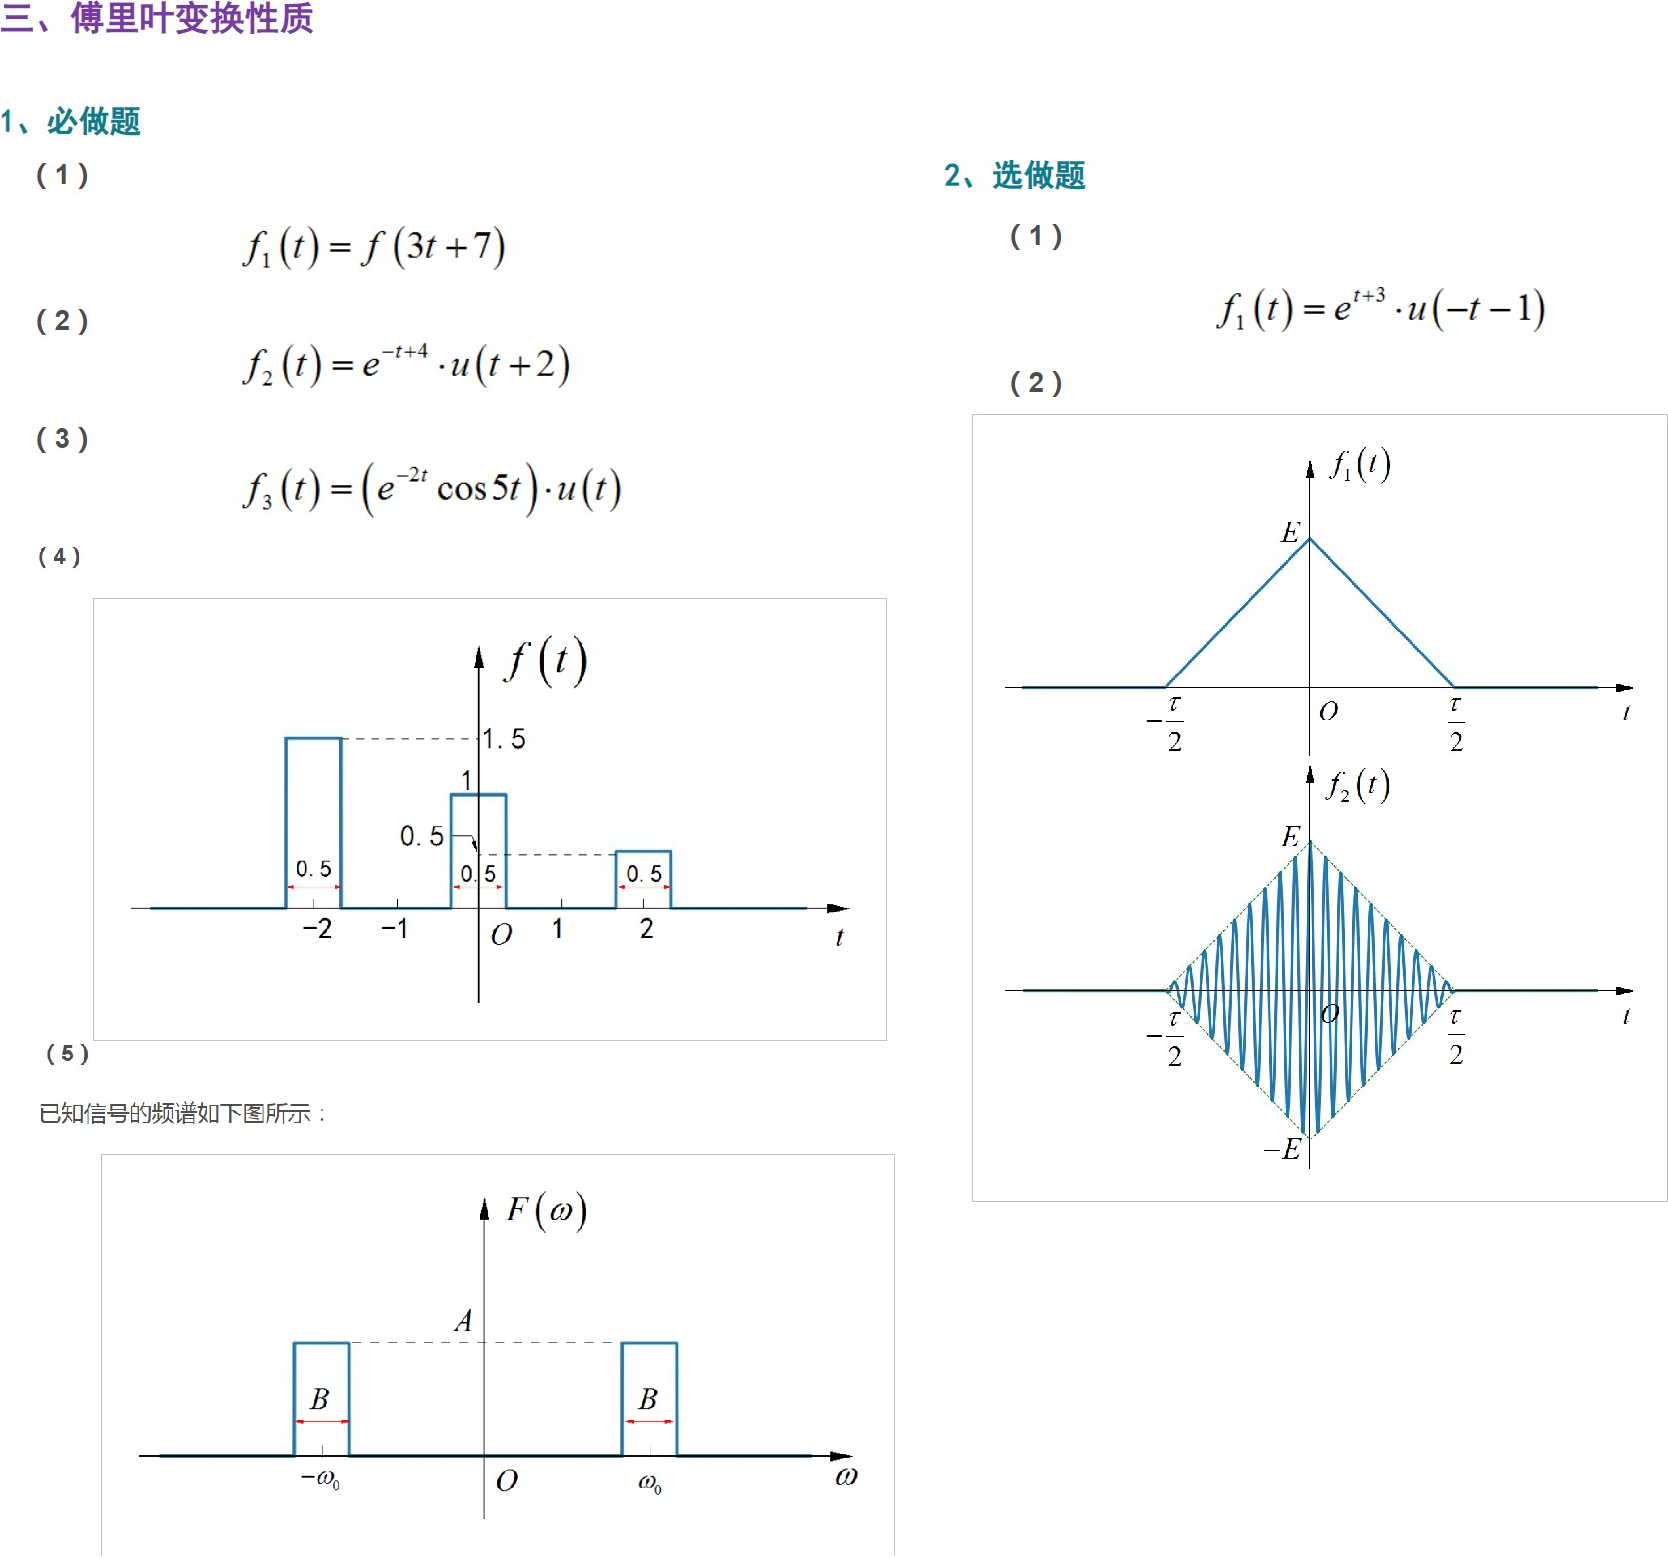 ▲ 图1.1.1 傅里叶变换性质相关习题